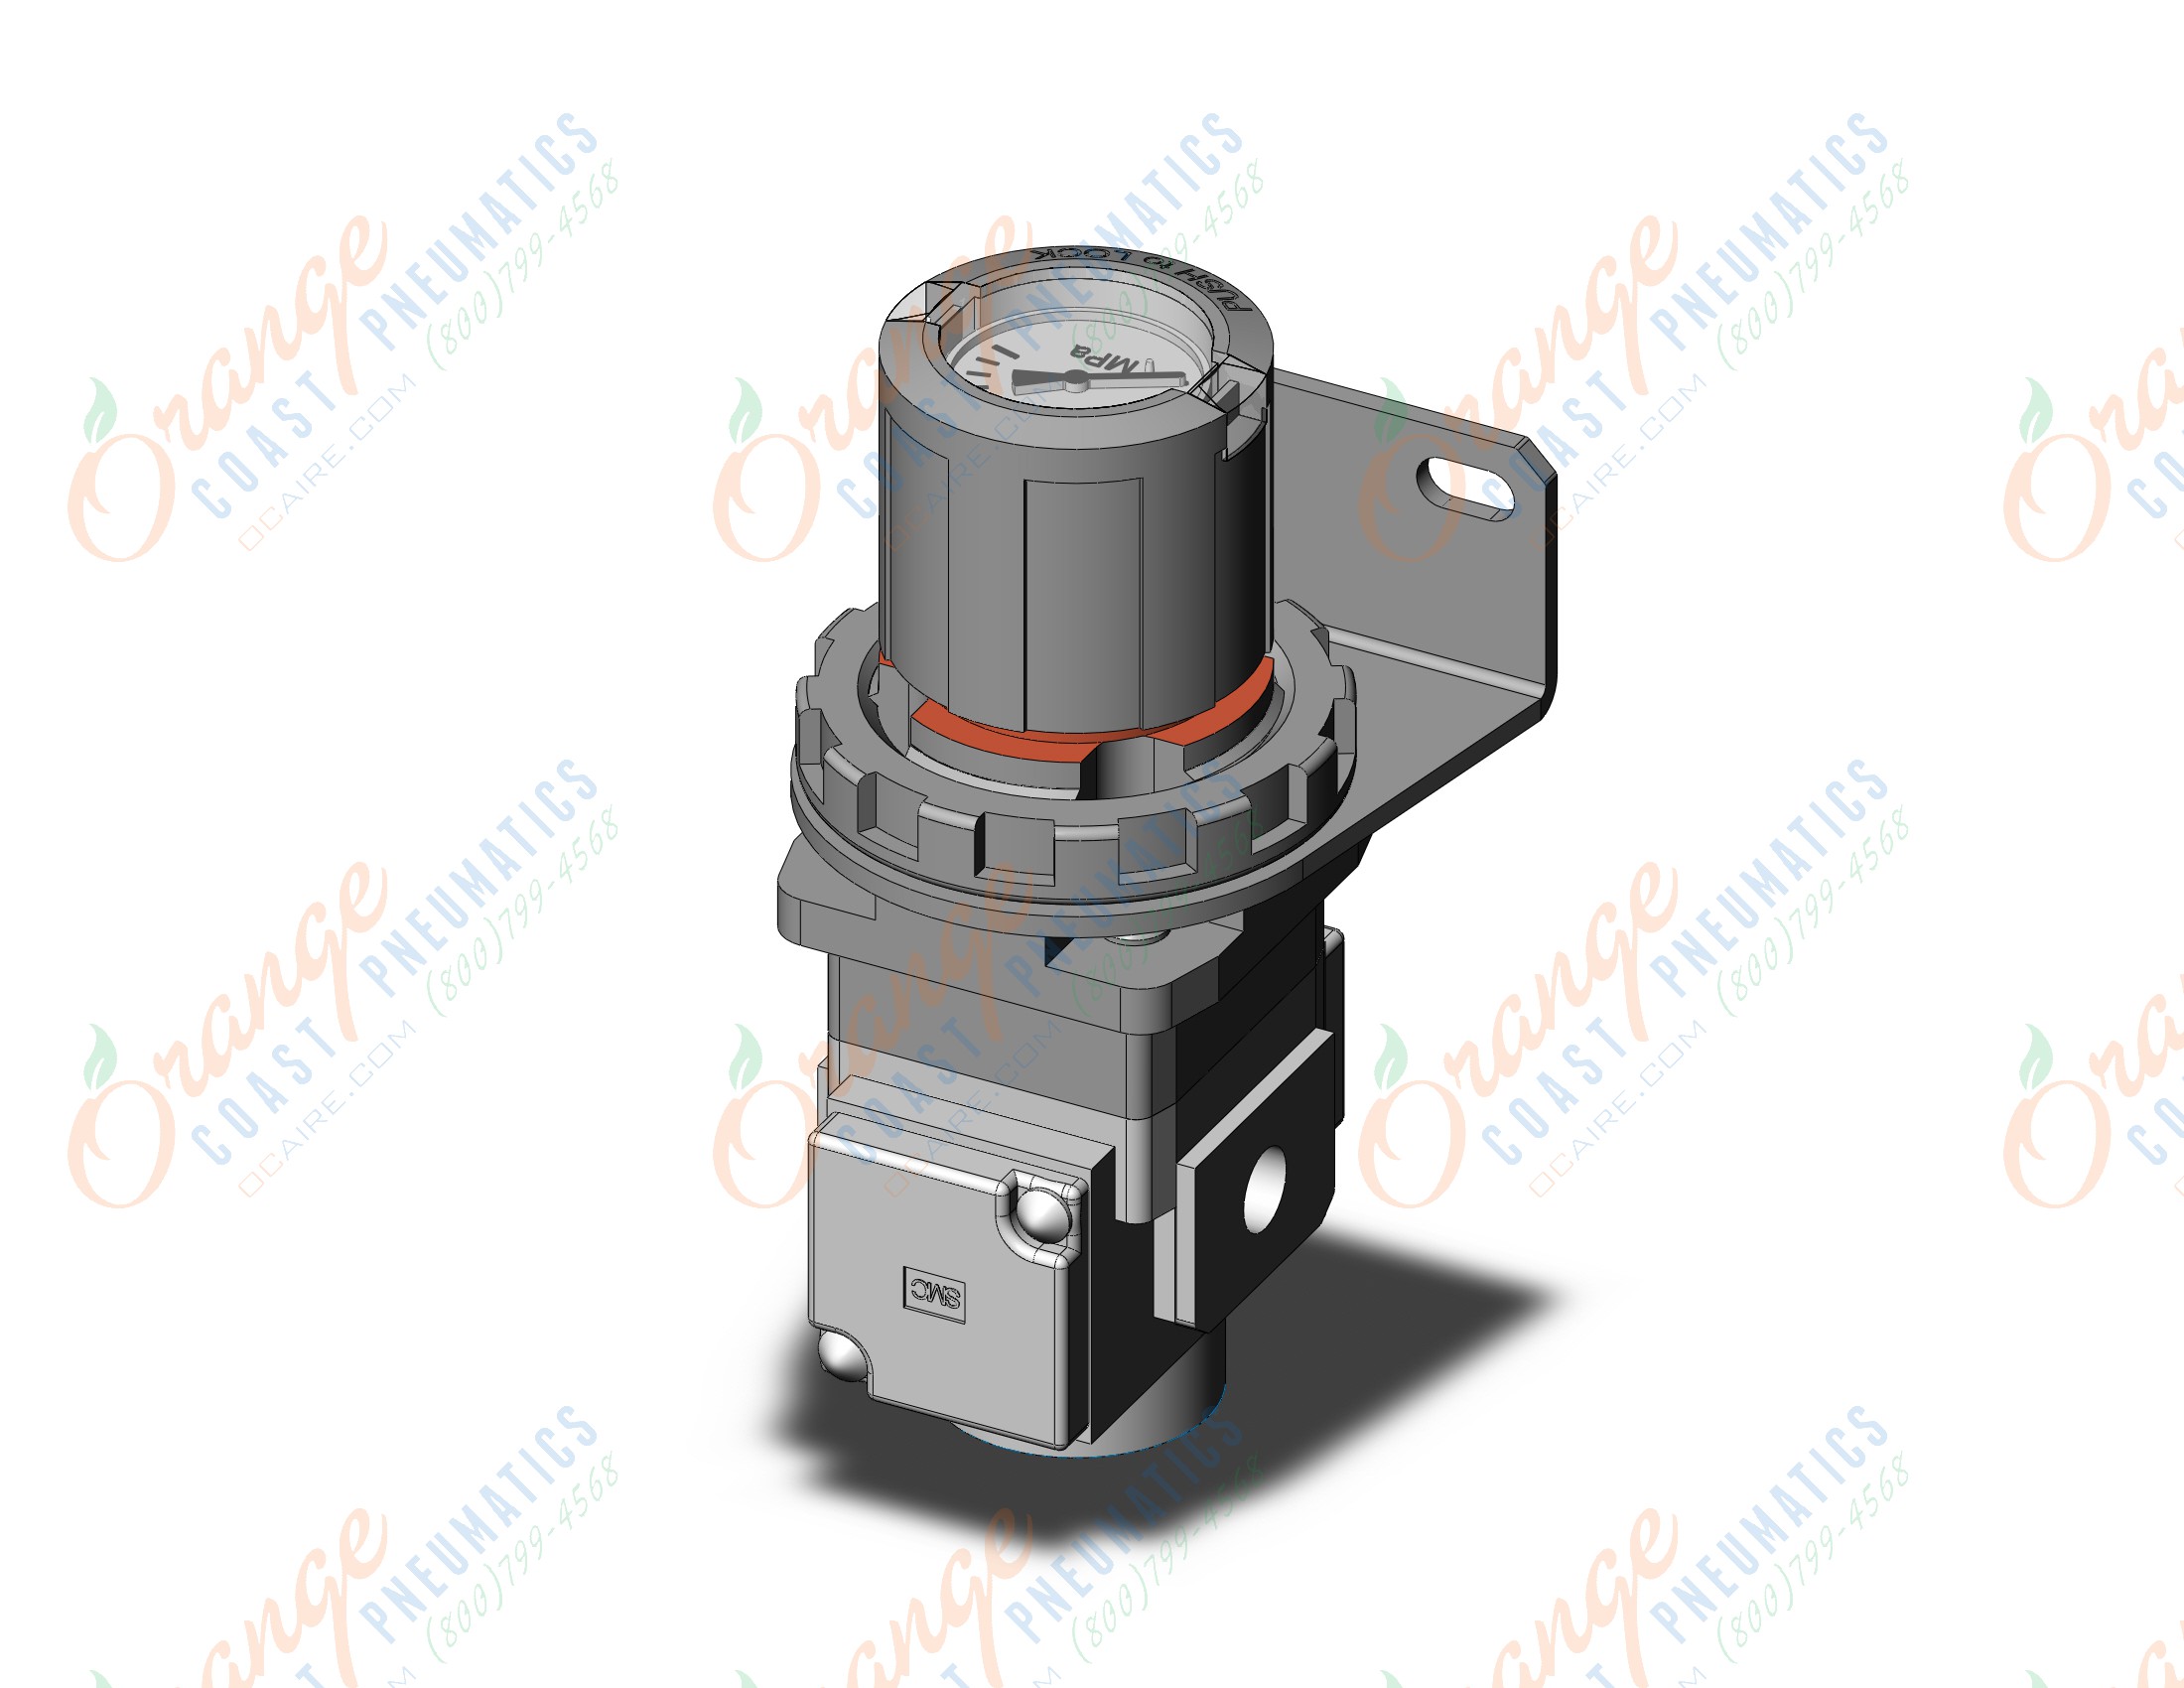 SMC ARG20K-F01BG1-1 regulator, gauge-handle, ARG REGULATOR W/PRESSURE GAUGE